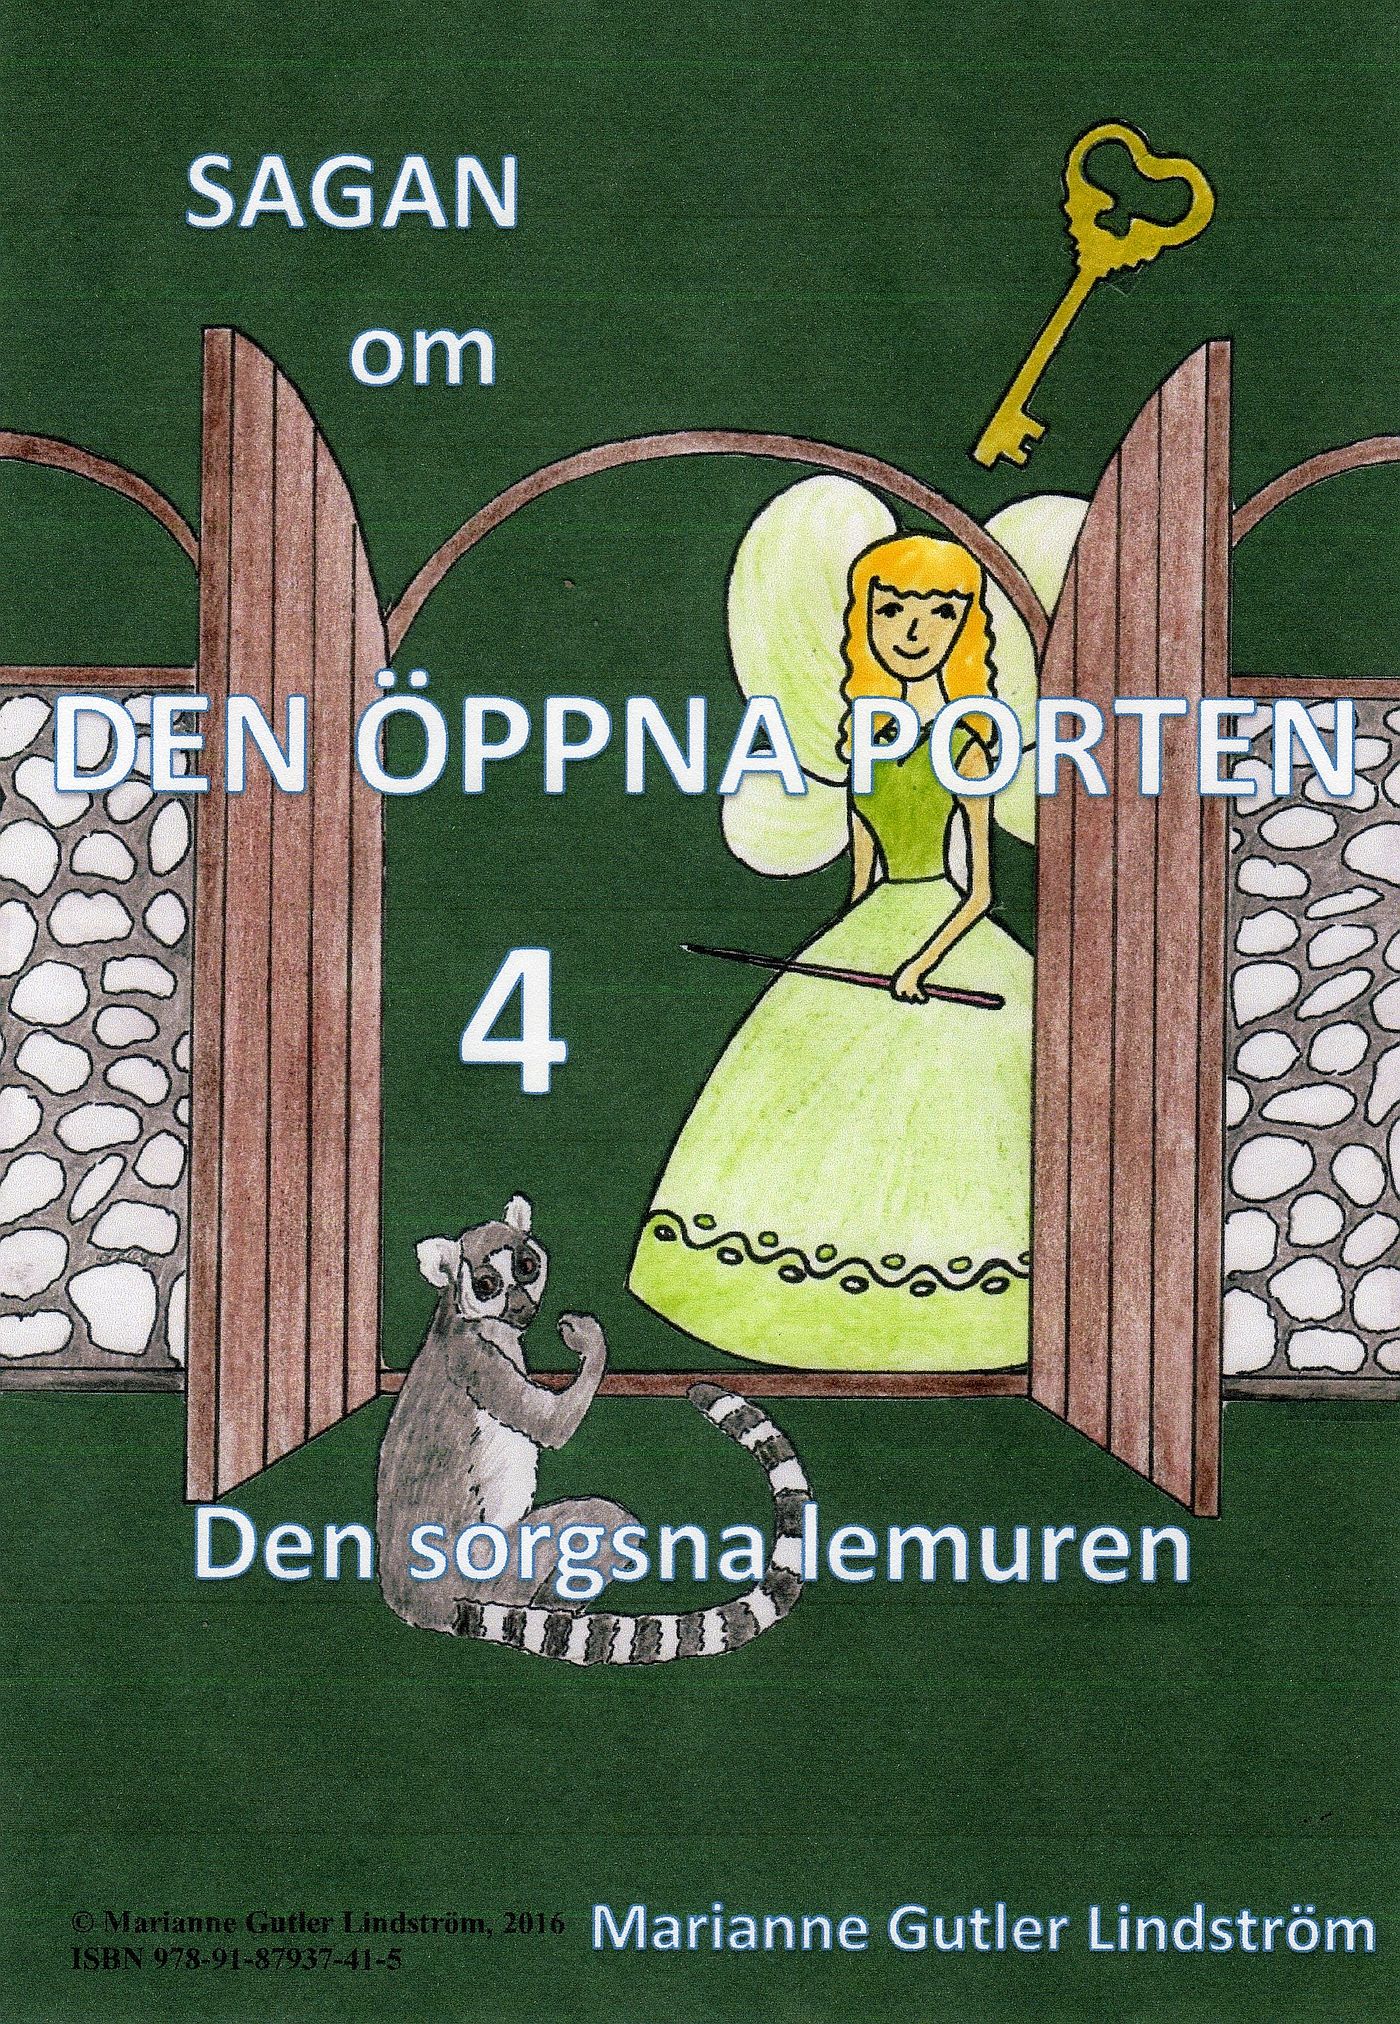 Sagan om den öppna porten 4. Den sorgsna lemuren, eBook by Marianne Gutler Lindström